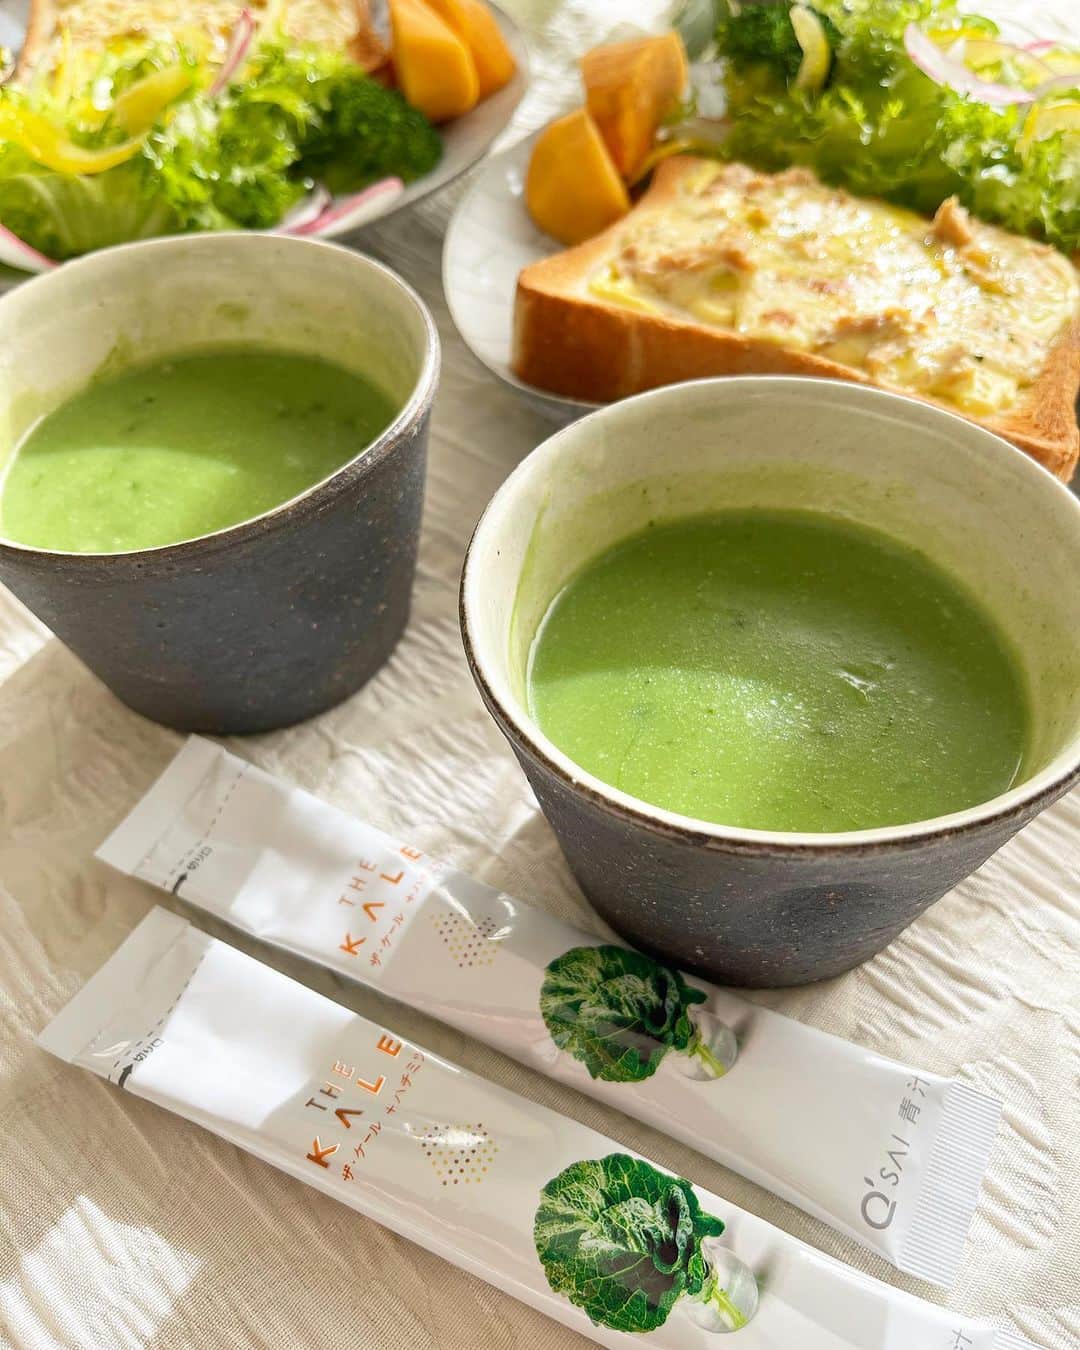 kyusai_kale_officialのインスタグラム：「ケールのポタージュ 作ってみたい！と思ったら「🥬」でコメントしてね！  パンにはあったか～いスープを合わせたくなりますよね😊  市販のポタージュスープにケールパウダーを混ぜるだけで栄養満点💕 見た目も鮮やかなお手軽ケールポタージュの出来上がり！  いつものメニューにケールパウダーを加えて、味変&栄養をプラスしちゃいましょう✨  Photo by @chiii32525 --------------------------------------------------- キューサイ【ケール・青汁】公式アカウントです🥬  オリジナルレシピやヘルス＆ビューティーケア情報をお届けしています✨  キューサイのケールや青汁を使った際は #キューサイ #ザケール をつけて投稿してみてくださいね！ ご紹介させていただくかもしれません🎵  豪華キャンペーンが当たるキャンペーン開催中🎁 詳しくはピン留め投稿をチェック✨ --------------------------------------------------- #キューサイ #qsai #ケール #ケールワーク #スーパーフード #kale #青汁 #健康生活 #ウェルエイジング #セルフケア #青汁レシピ #健康レシピ #健康ごはん #アレンジレシピ #ヘルシーレシピ #ヘルシースイーツ #ヘルシーおやつ #簡単レシピ #簡単おやつ #からだにやさしいごはん #からだにやさしいおやつ #料理好きな人と繋がりたい #美容好きな人と繋がりたい  #おうちカフェ #カフェごはん #ポタージュ #スープレシピ #美容と健康」